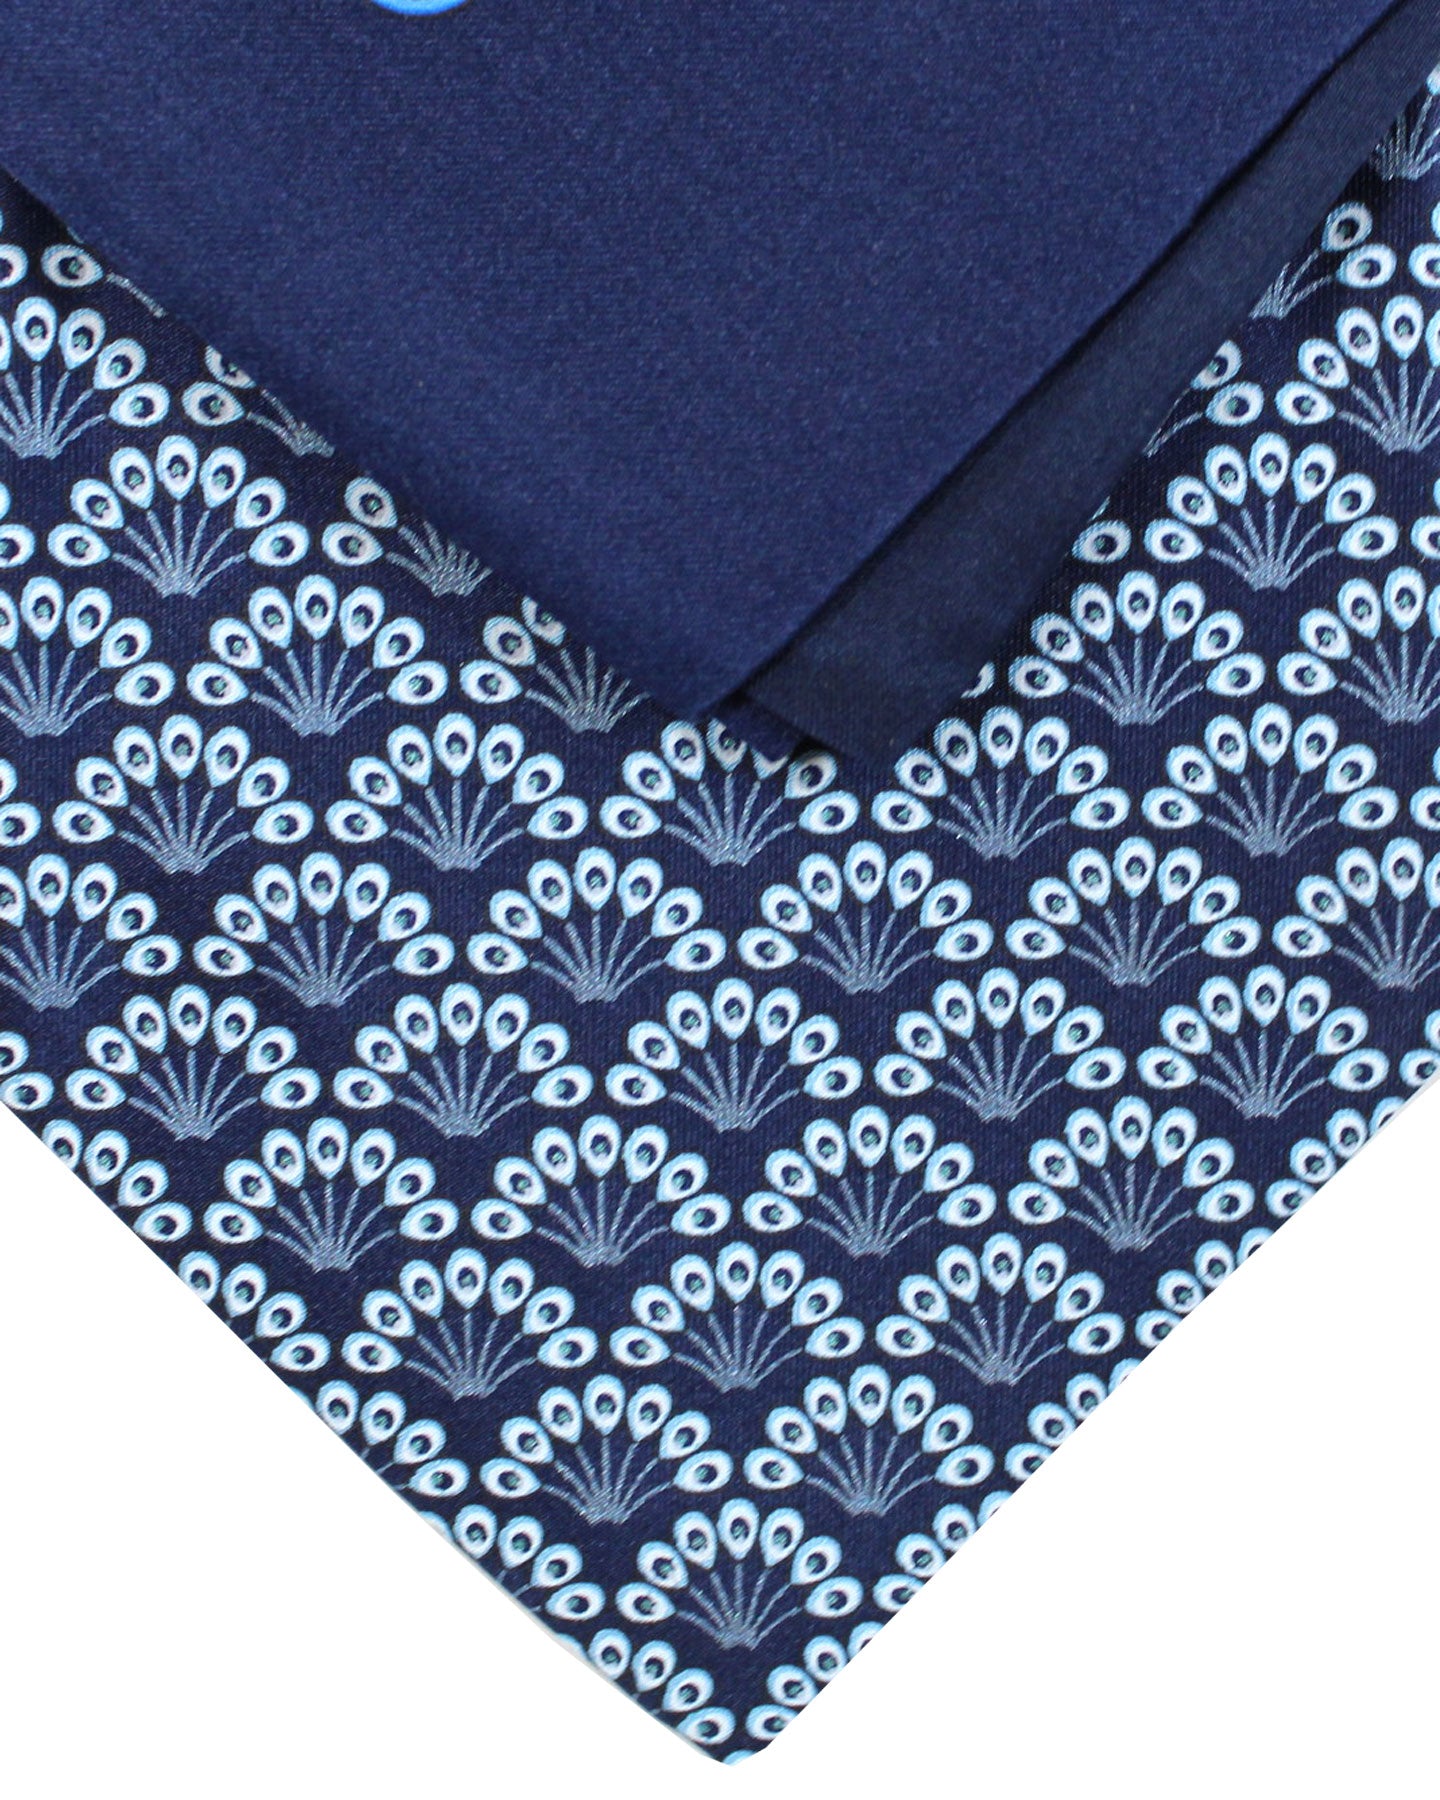 Zilli Tie & Matching Pocket Square Set Navy Blue Floral Design